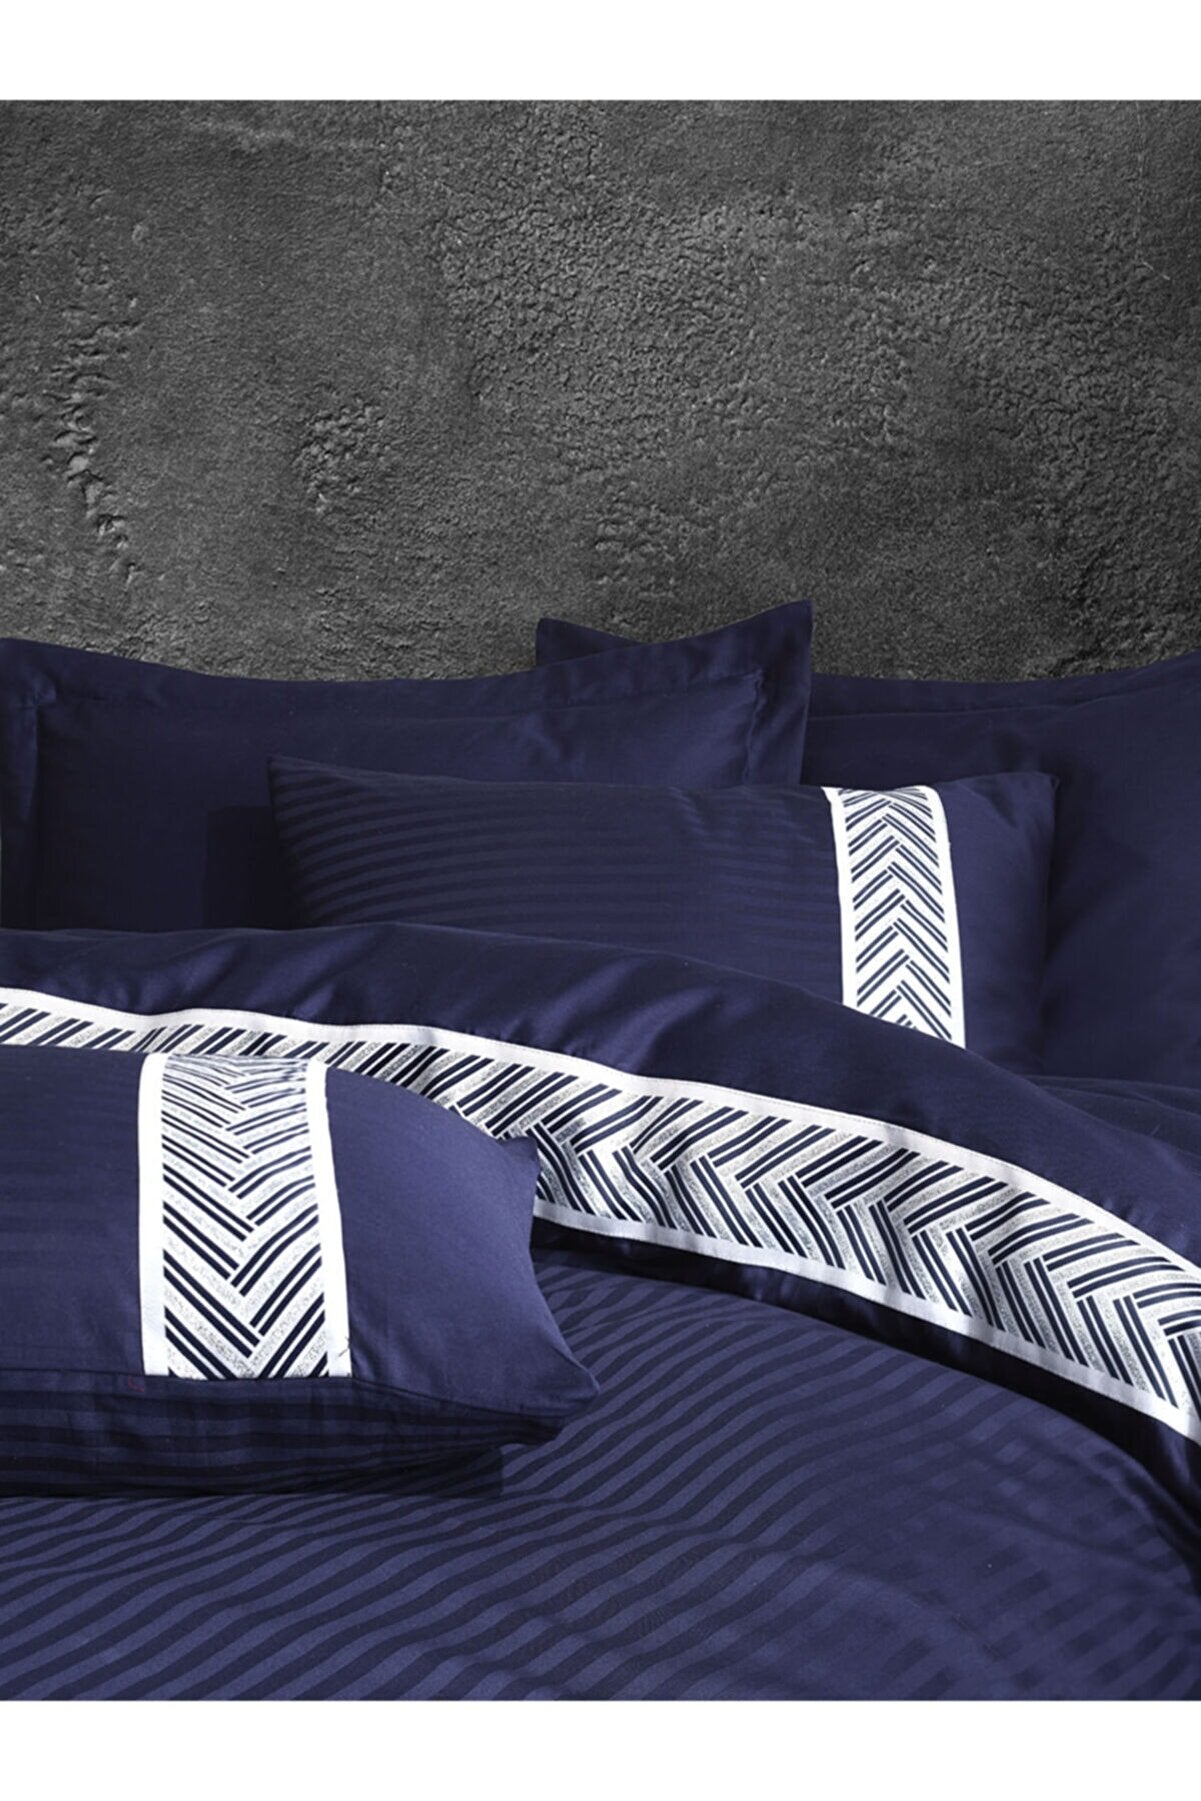 Şaheser Brilliant 6-teiliges Bettwäsche-Set für Doppelbetten aus 100% Baumwoll-Satin